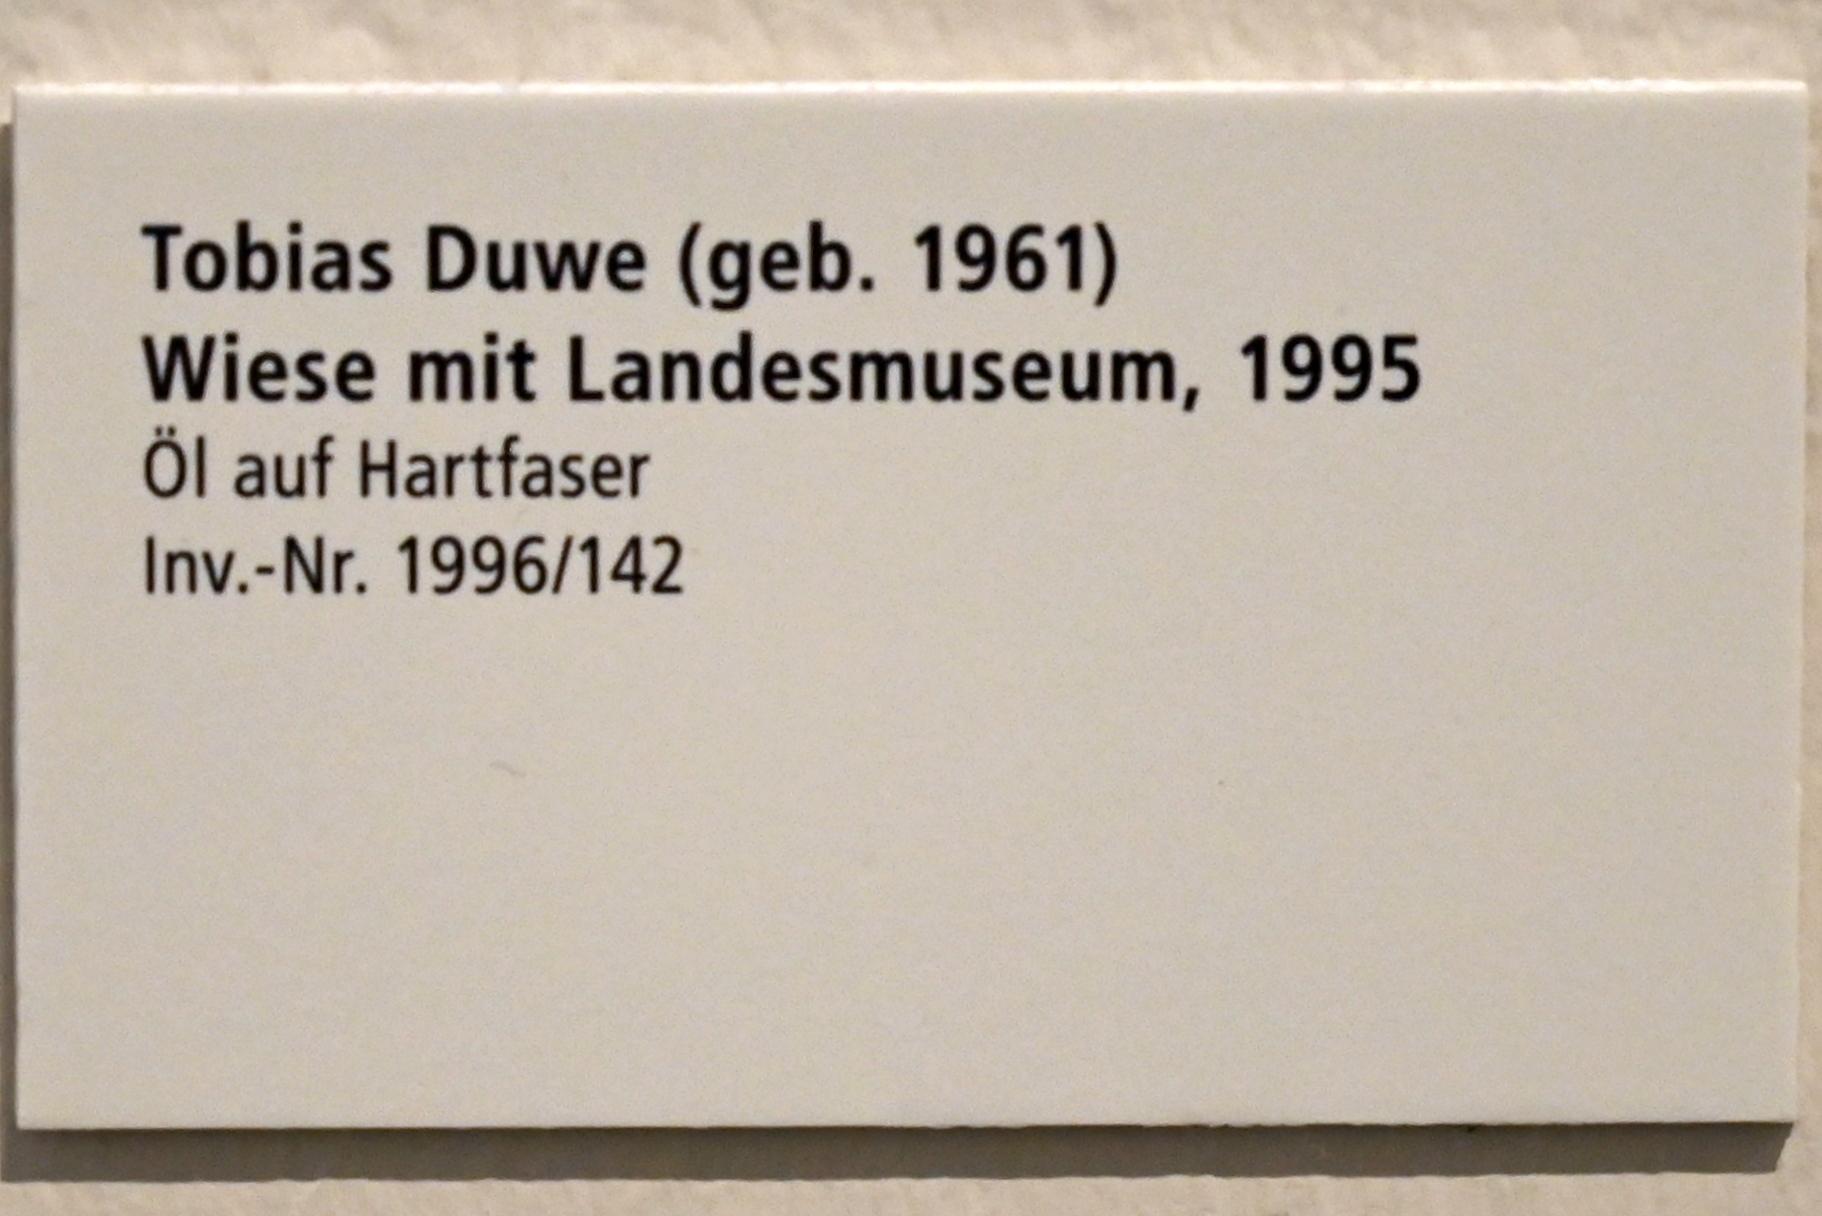 Tobias Duwe (1995–2006), Wiese mit Landesmuseum, Schleswig, Landesmuseum für Kunst und Kulturgeschichte, Galerie der Klassischen Moderne, 1995, Bild 2/2